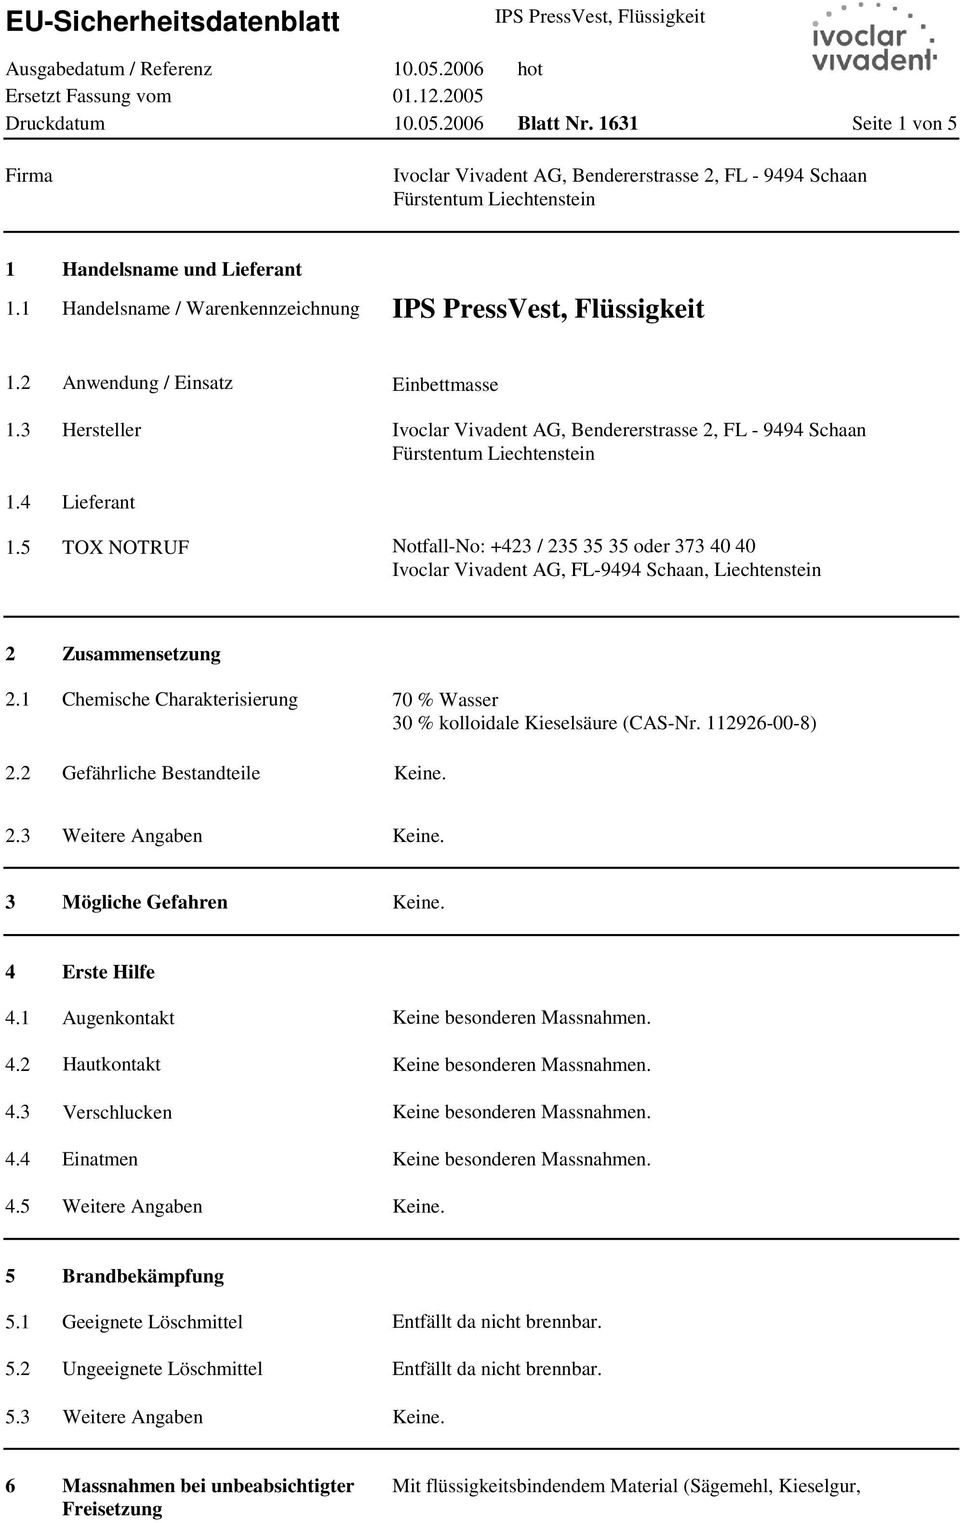 Ivoclar Vivadent AG, FL-9494 Schaan, Liechtenstein 2 2.1 2.2 Zusammensetzung Chemische Charakterisierung Gefährliche Bestandteile 70 % Wasser 30 % kolloidale Kieselsäure (CAS-Nr. 112926-00-8) 2.